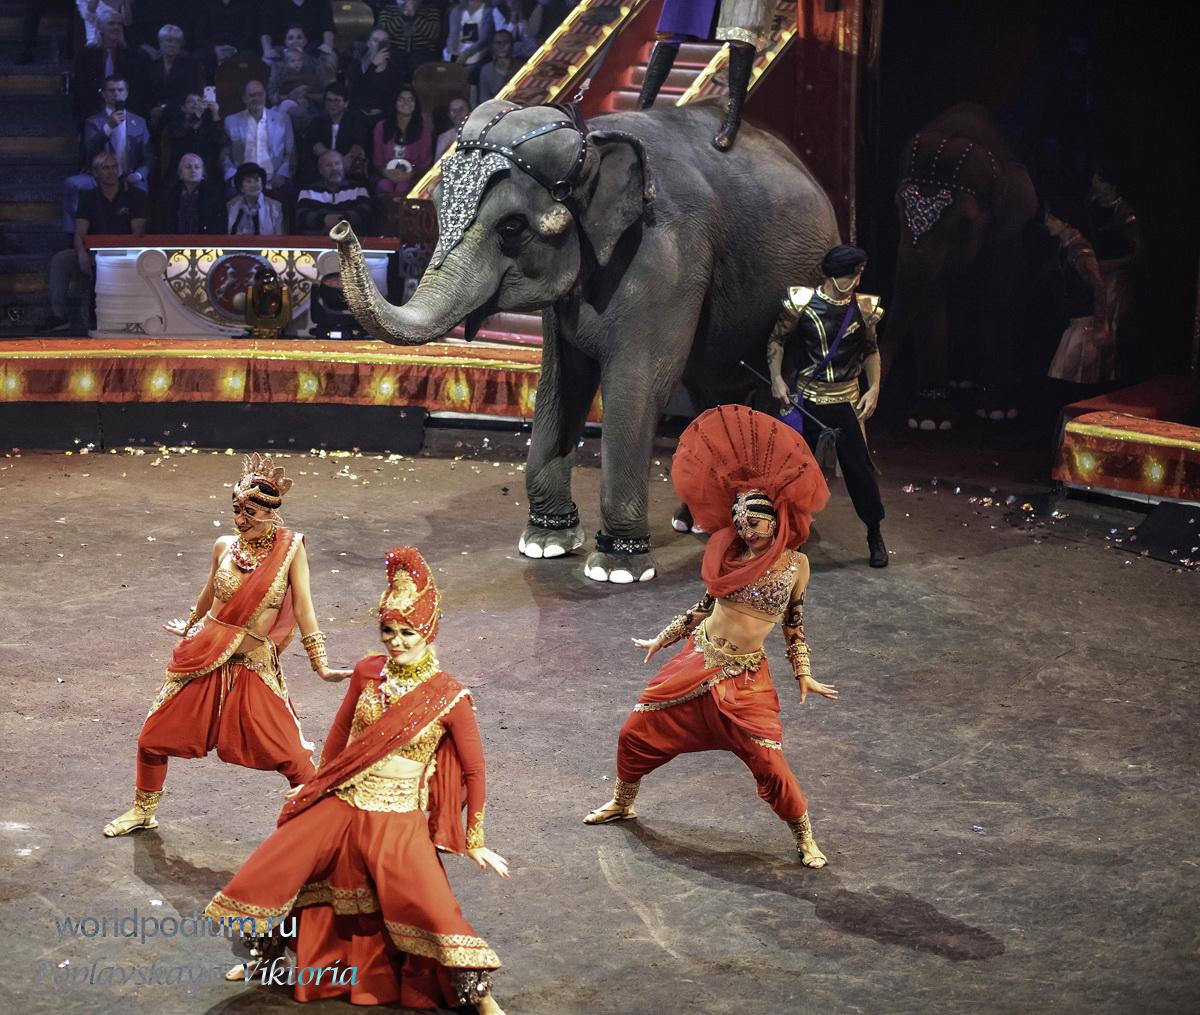 100-летний юбилей отечественного государственного цирка отметили грандиозным шоу в Цирке на Цветном бульваре!